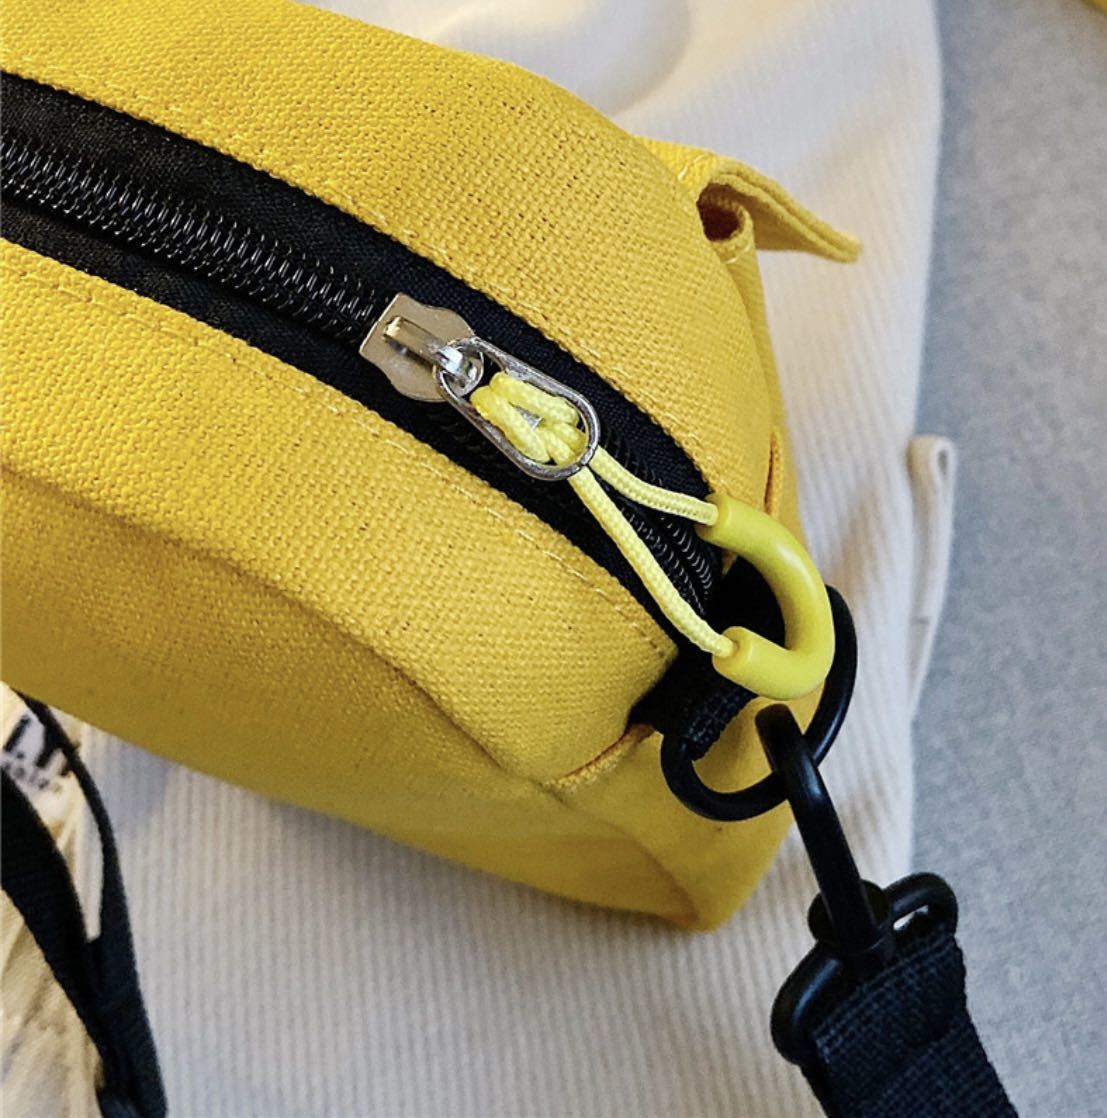 ミニポシェット 女性用バッグ新型学生清ちゃん初心者がショルダーバッグを持つ 通学ミニショルダーバッグ_画像5